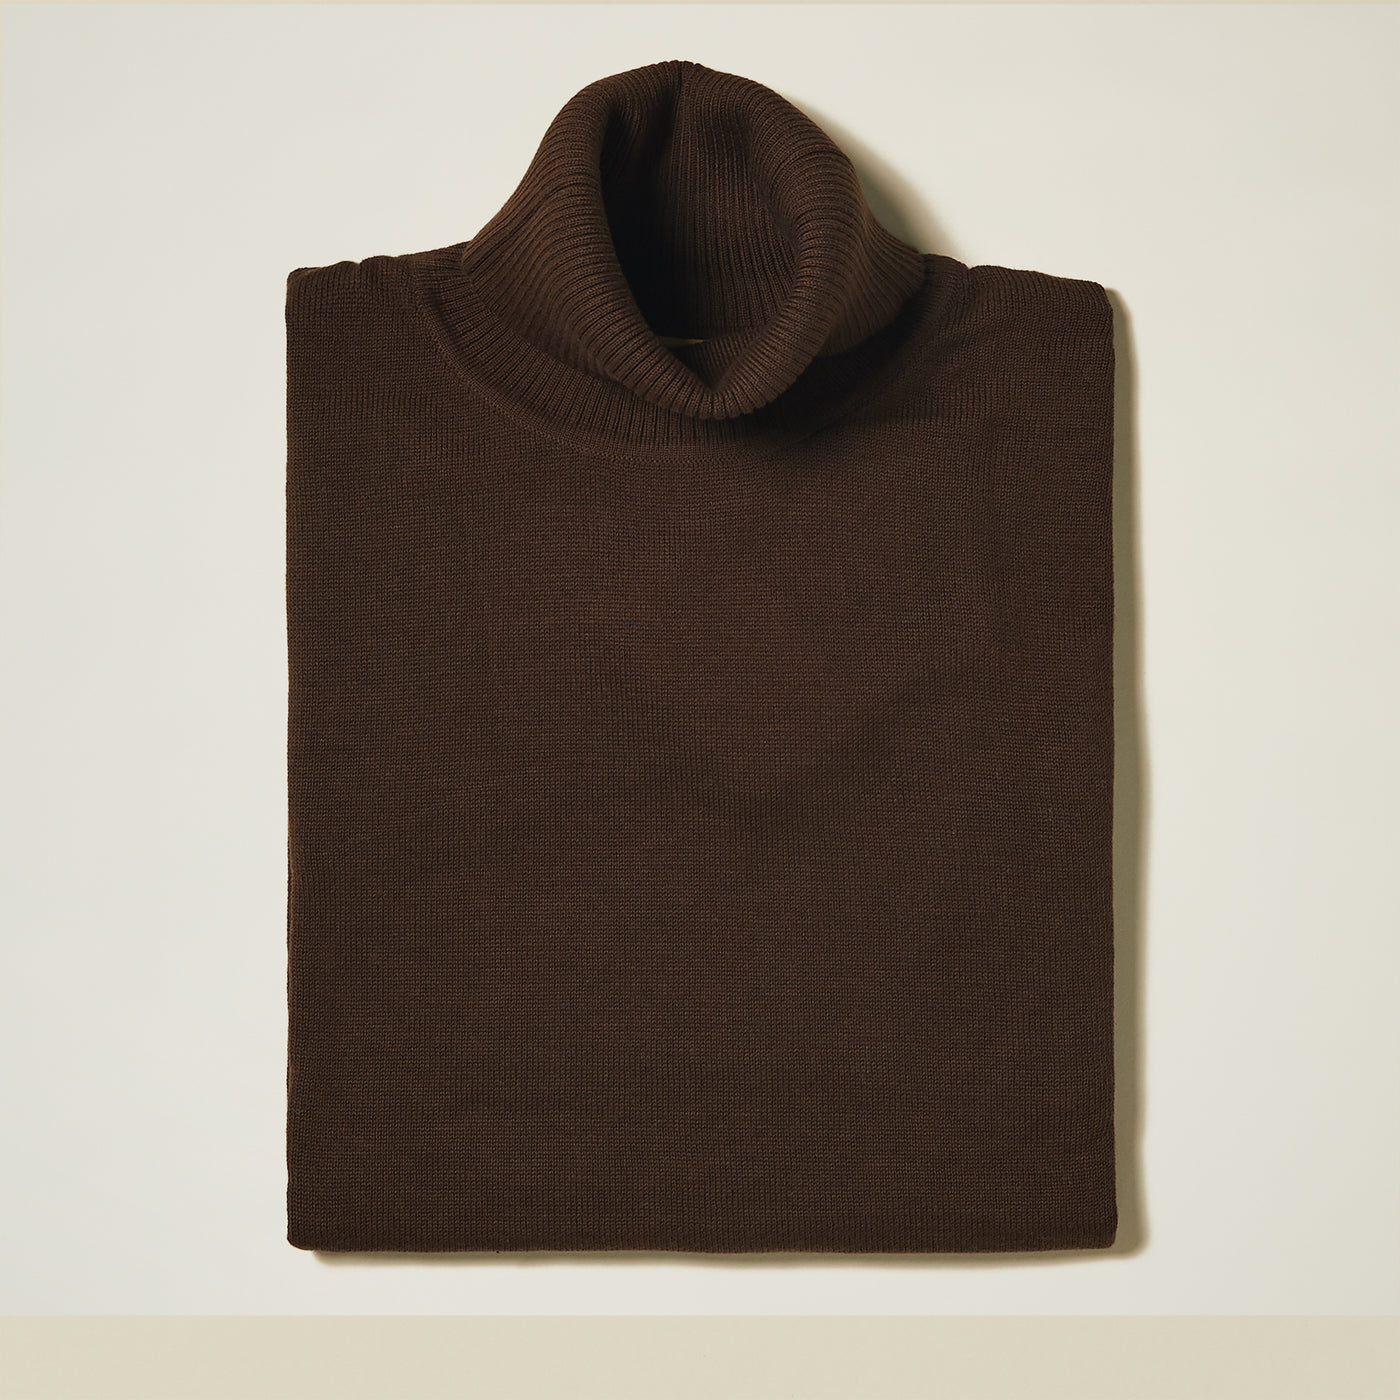 Cotton Blend Turtleneck Sweater - Beige & Browns - INSERCH